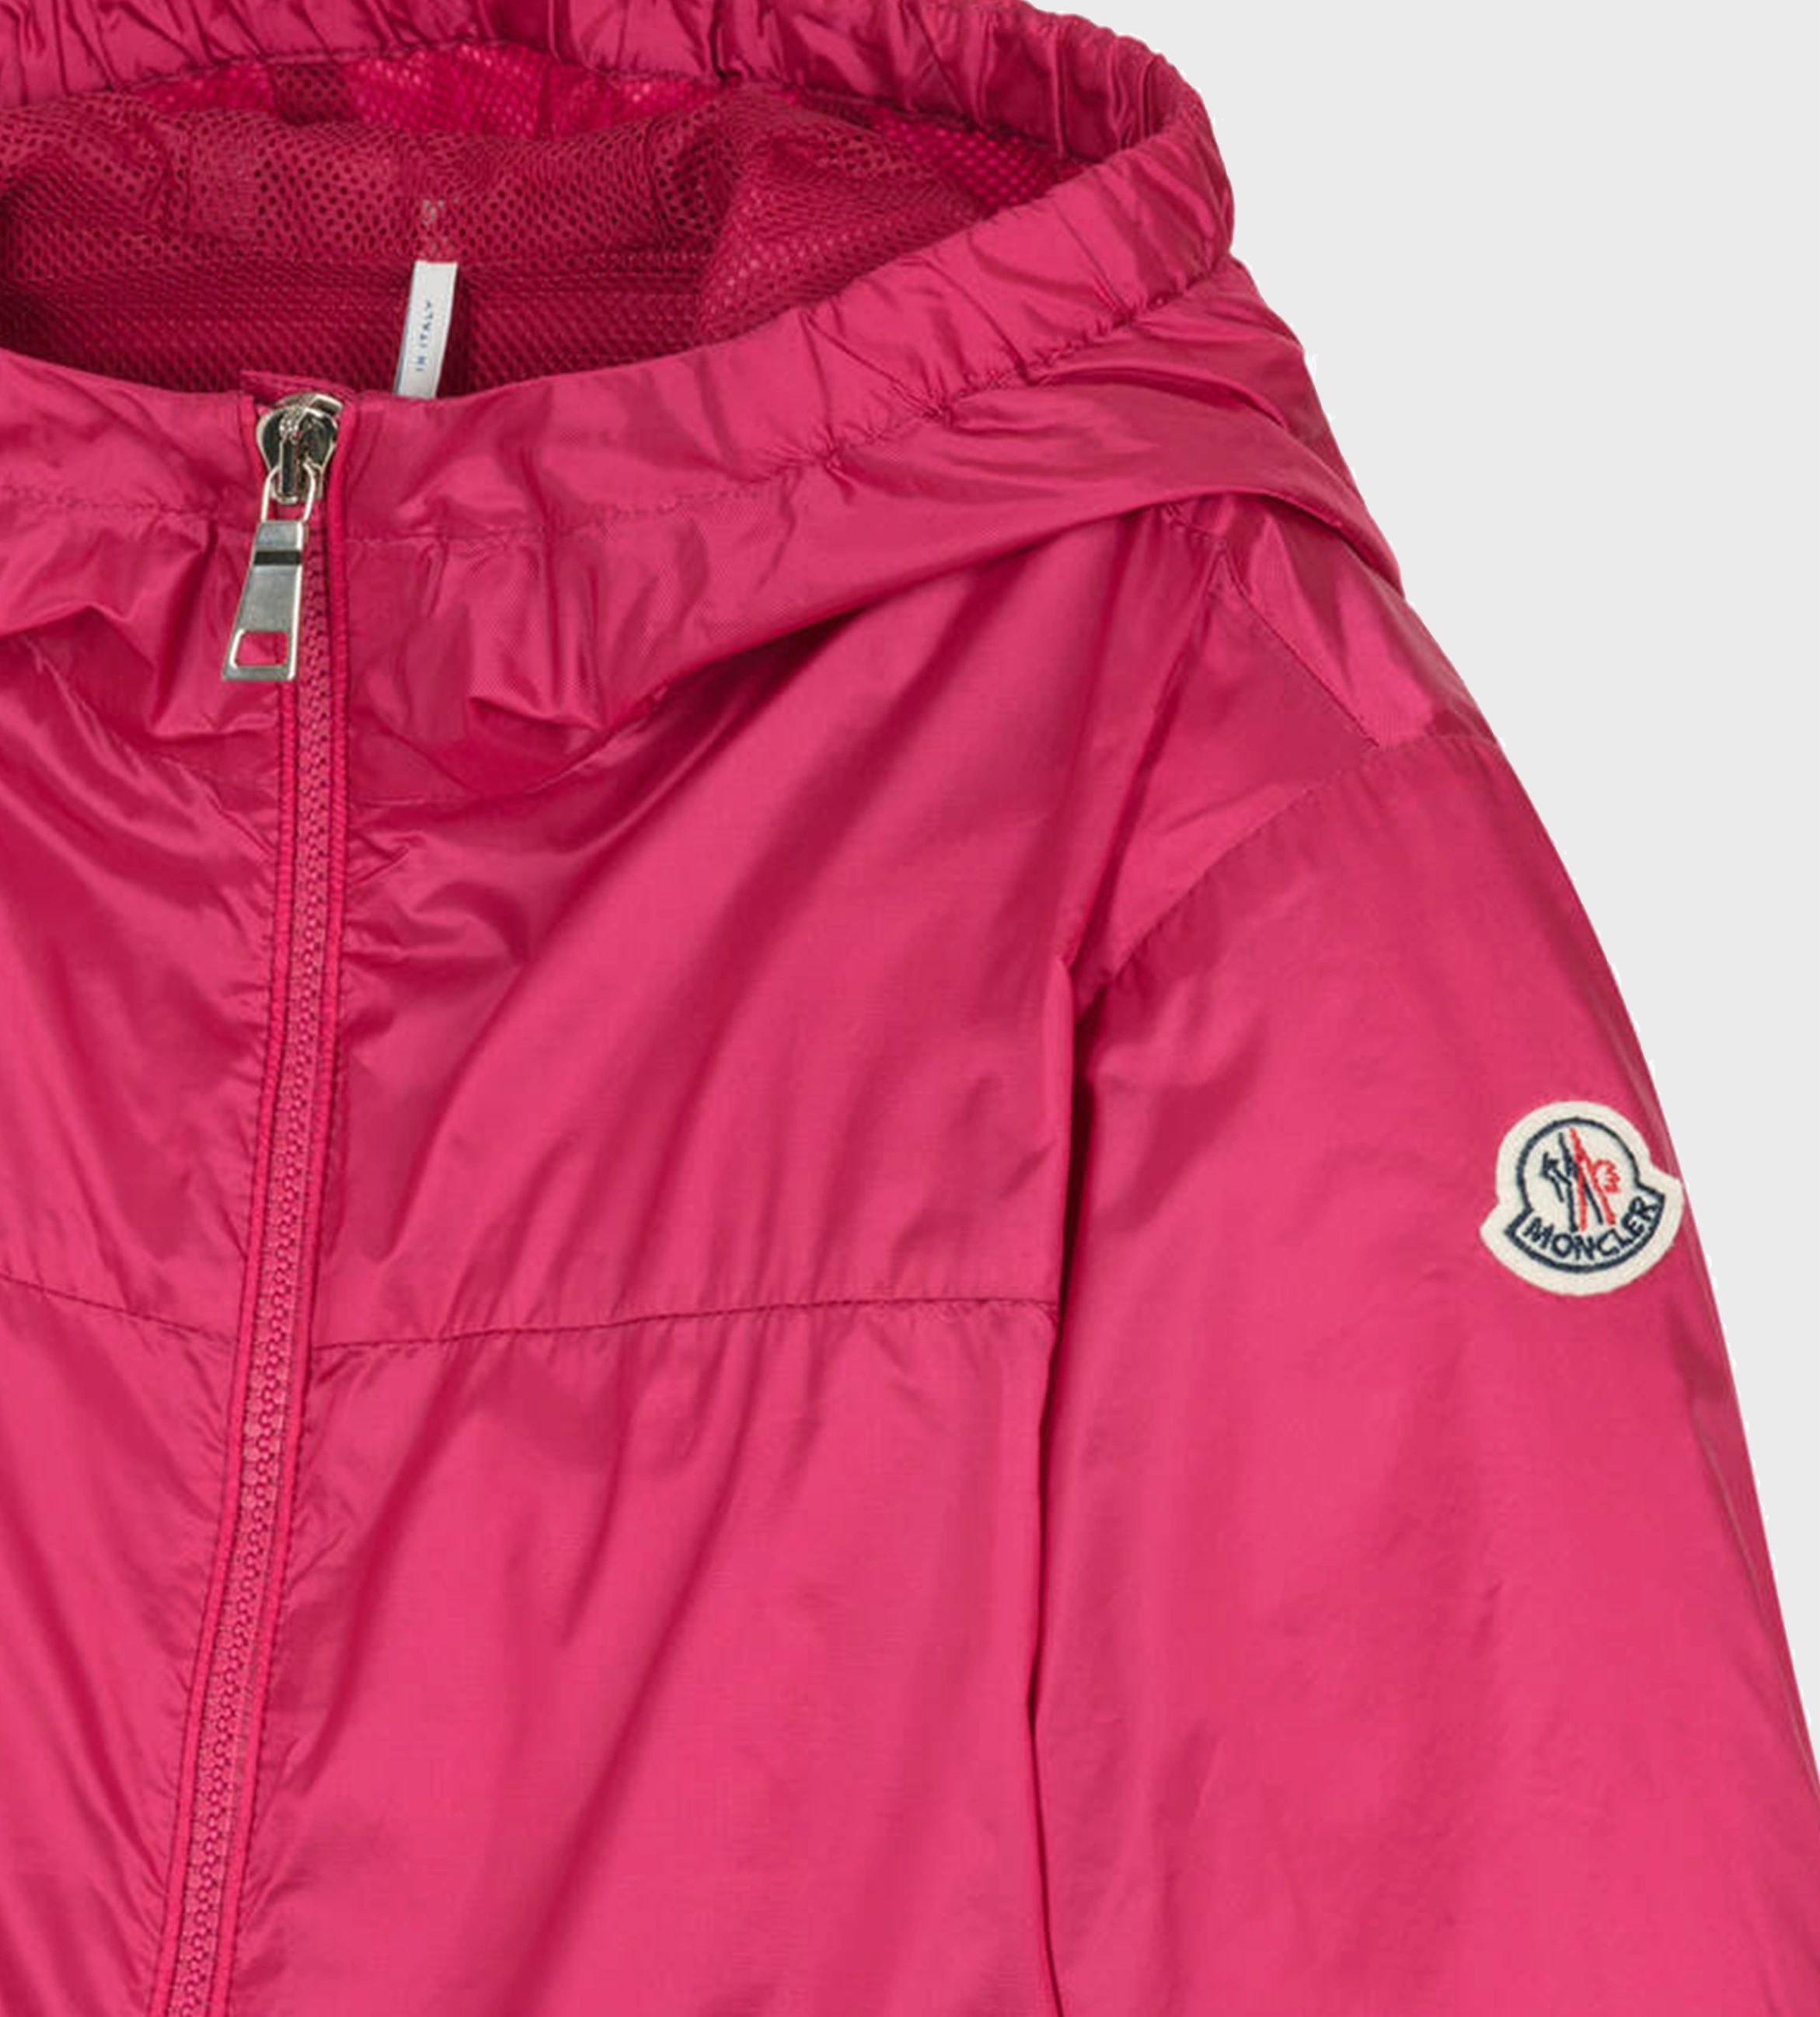 Owara Hooded Jacket Pink